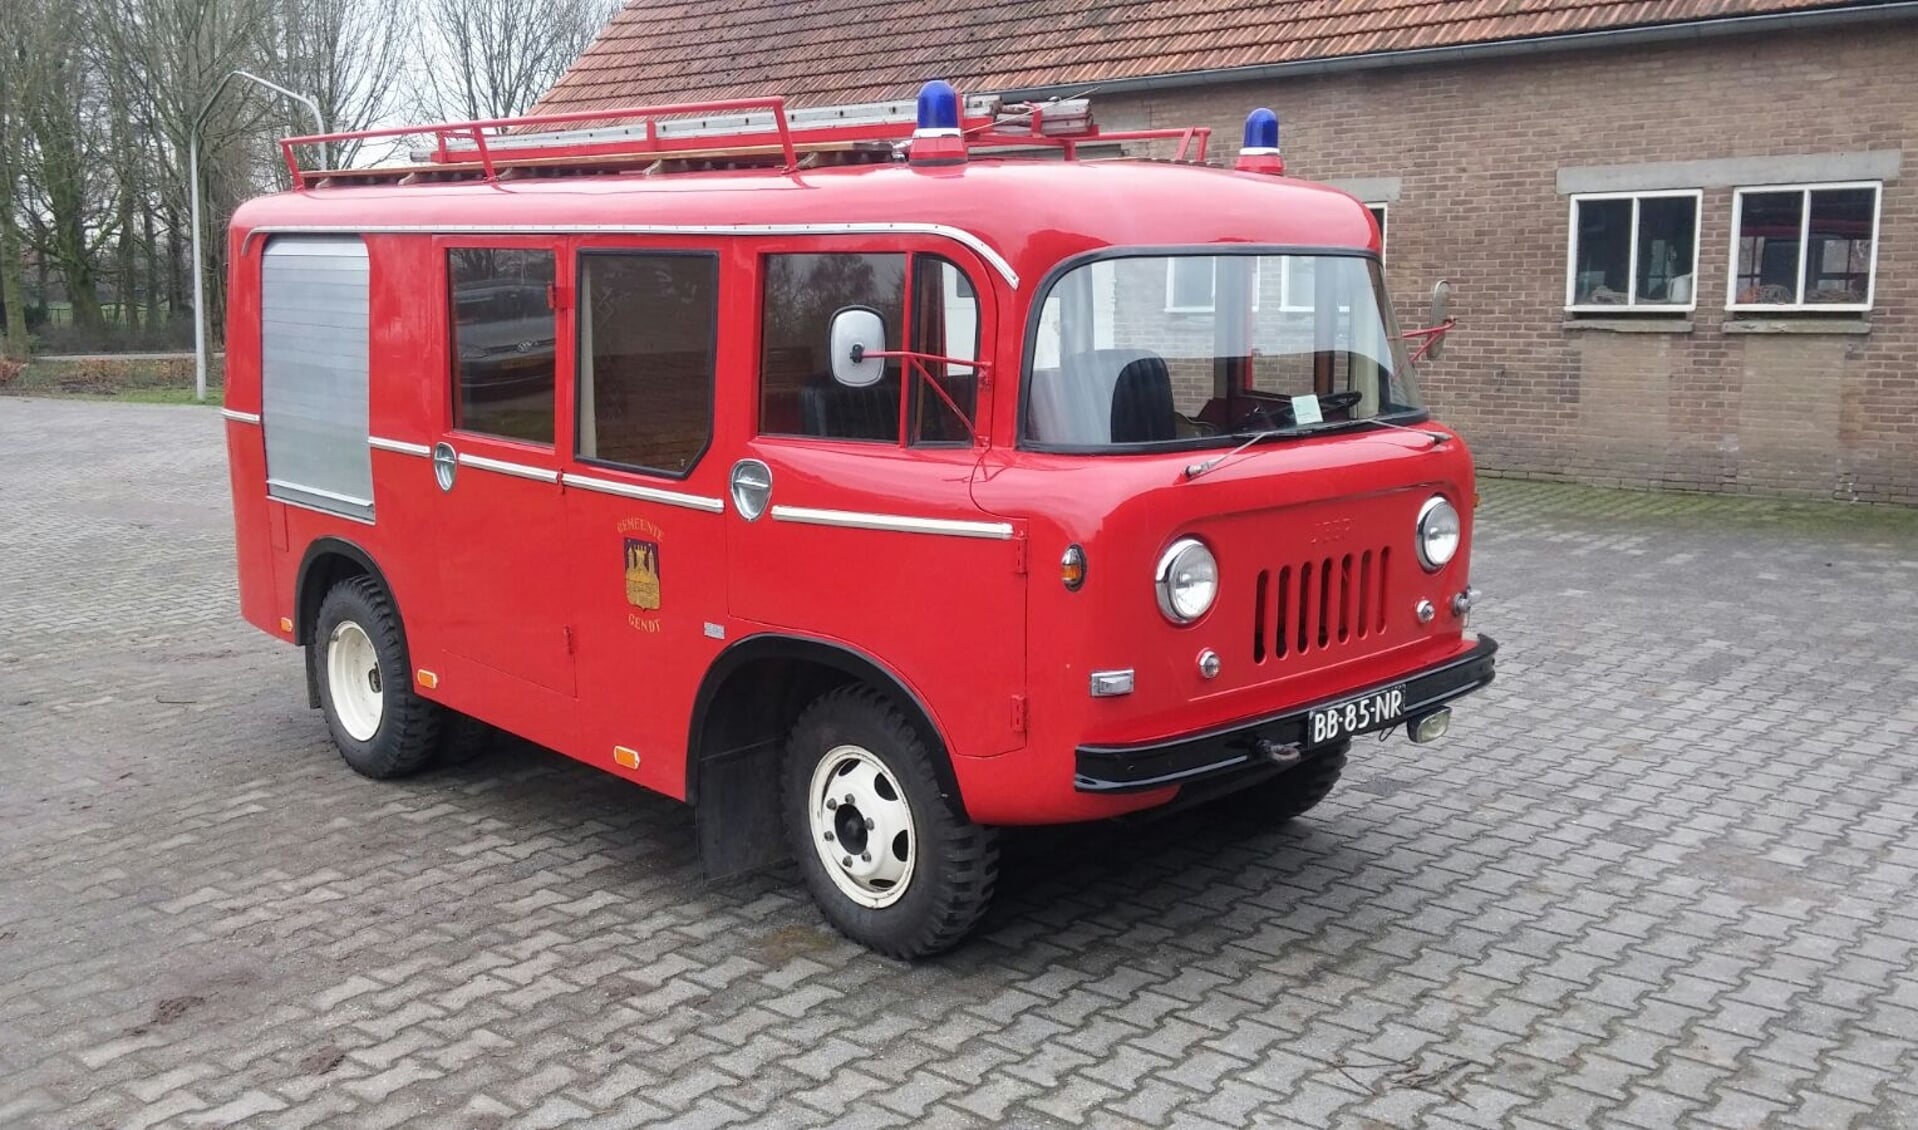 RIJSSEN - De Willy brandweerwagen uit 1964 en de Iveco motorspuit rijden weer op de dinsdagen bij het brandweermuseum. 